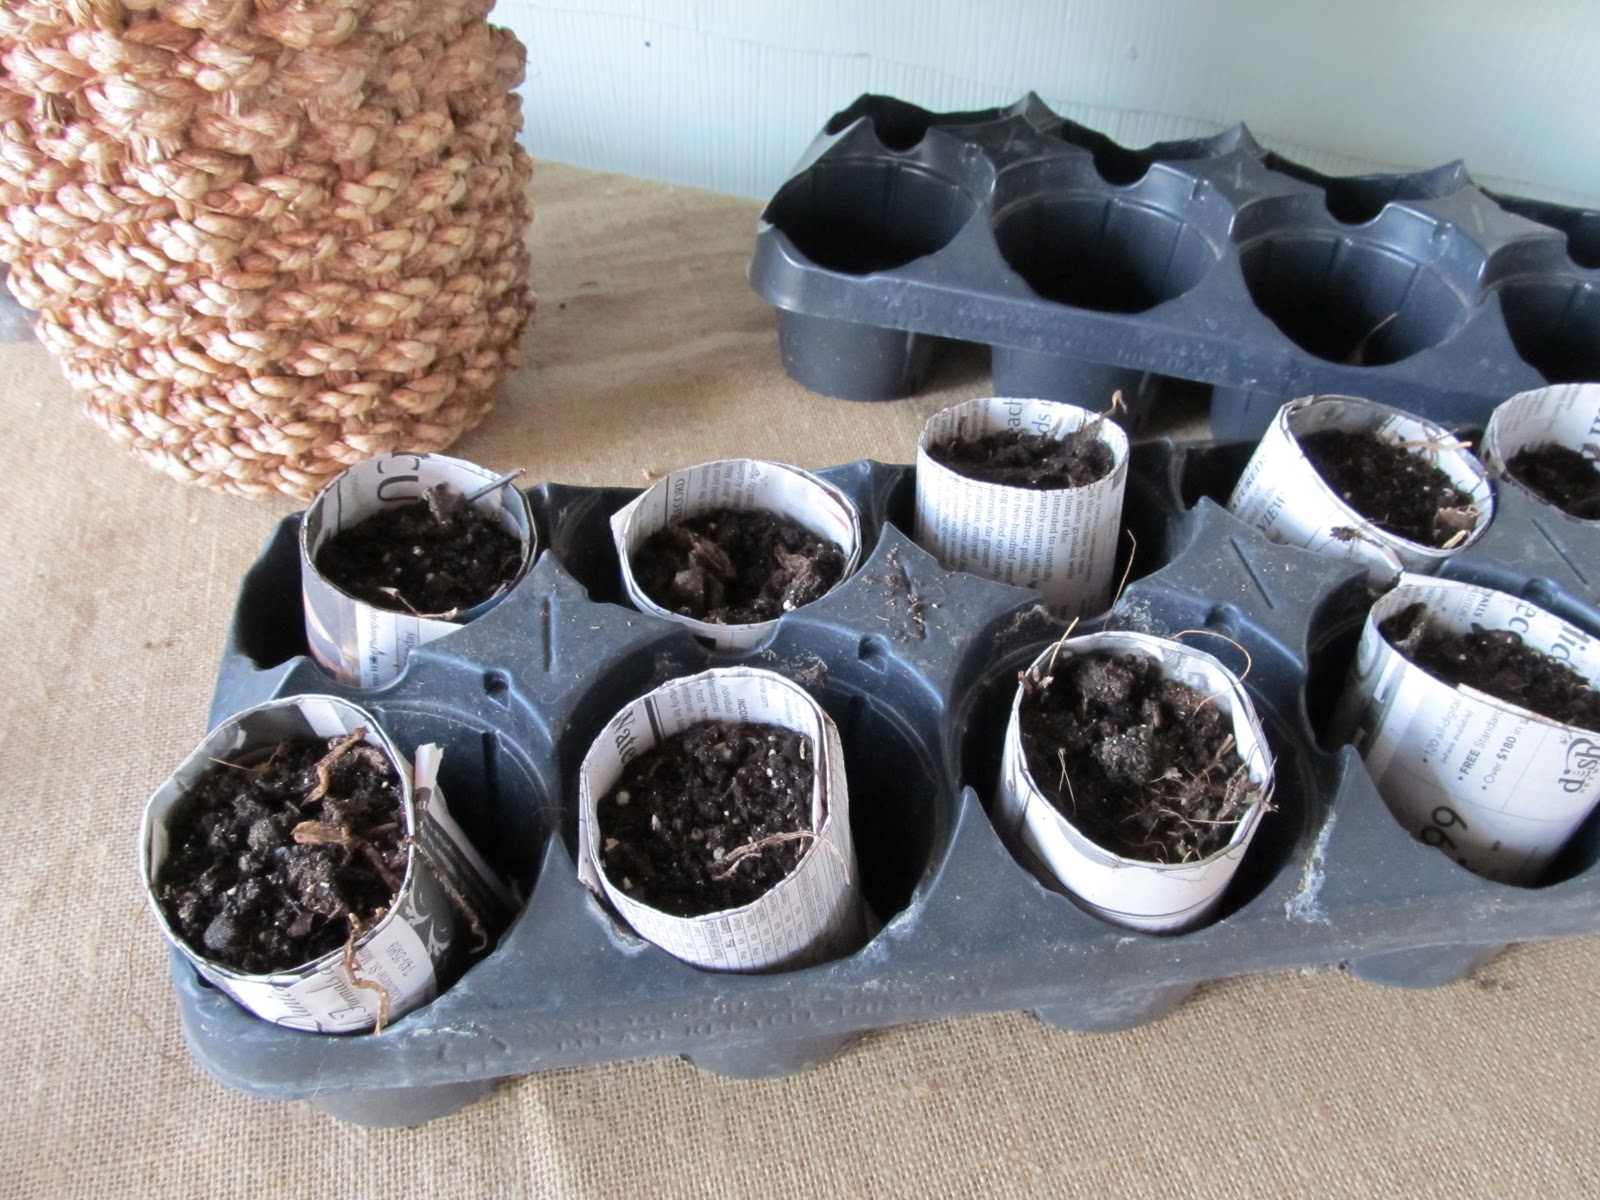 Mini soil pots